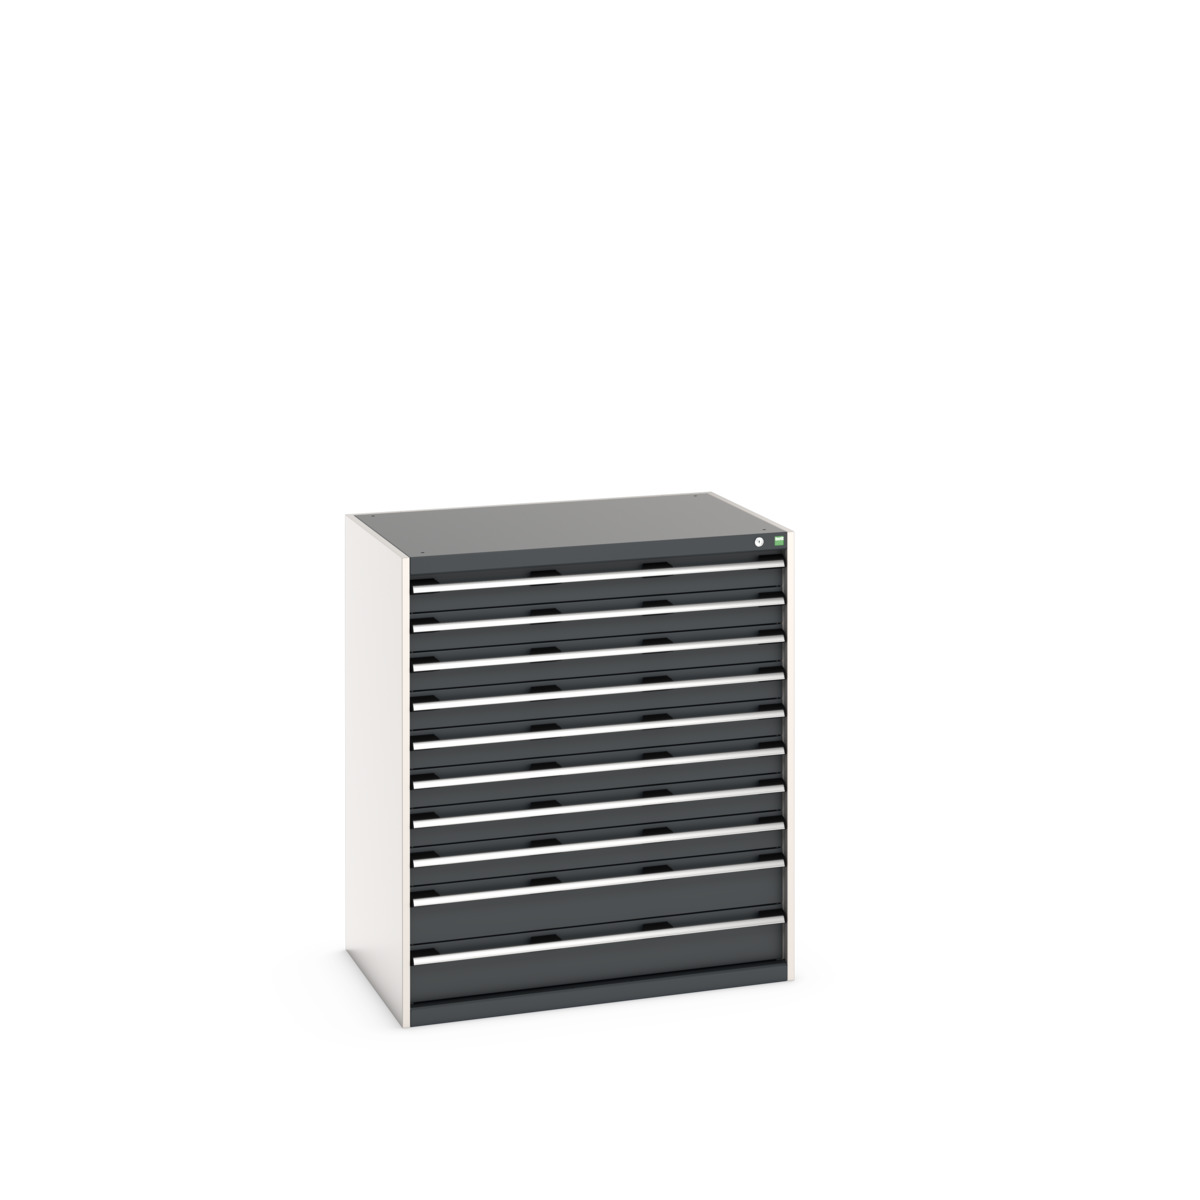 40029033.19V - cubio drawer cabinet